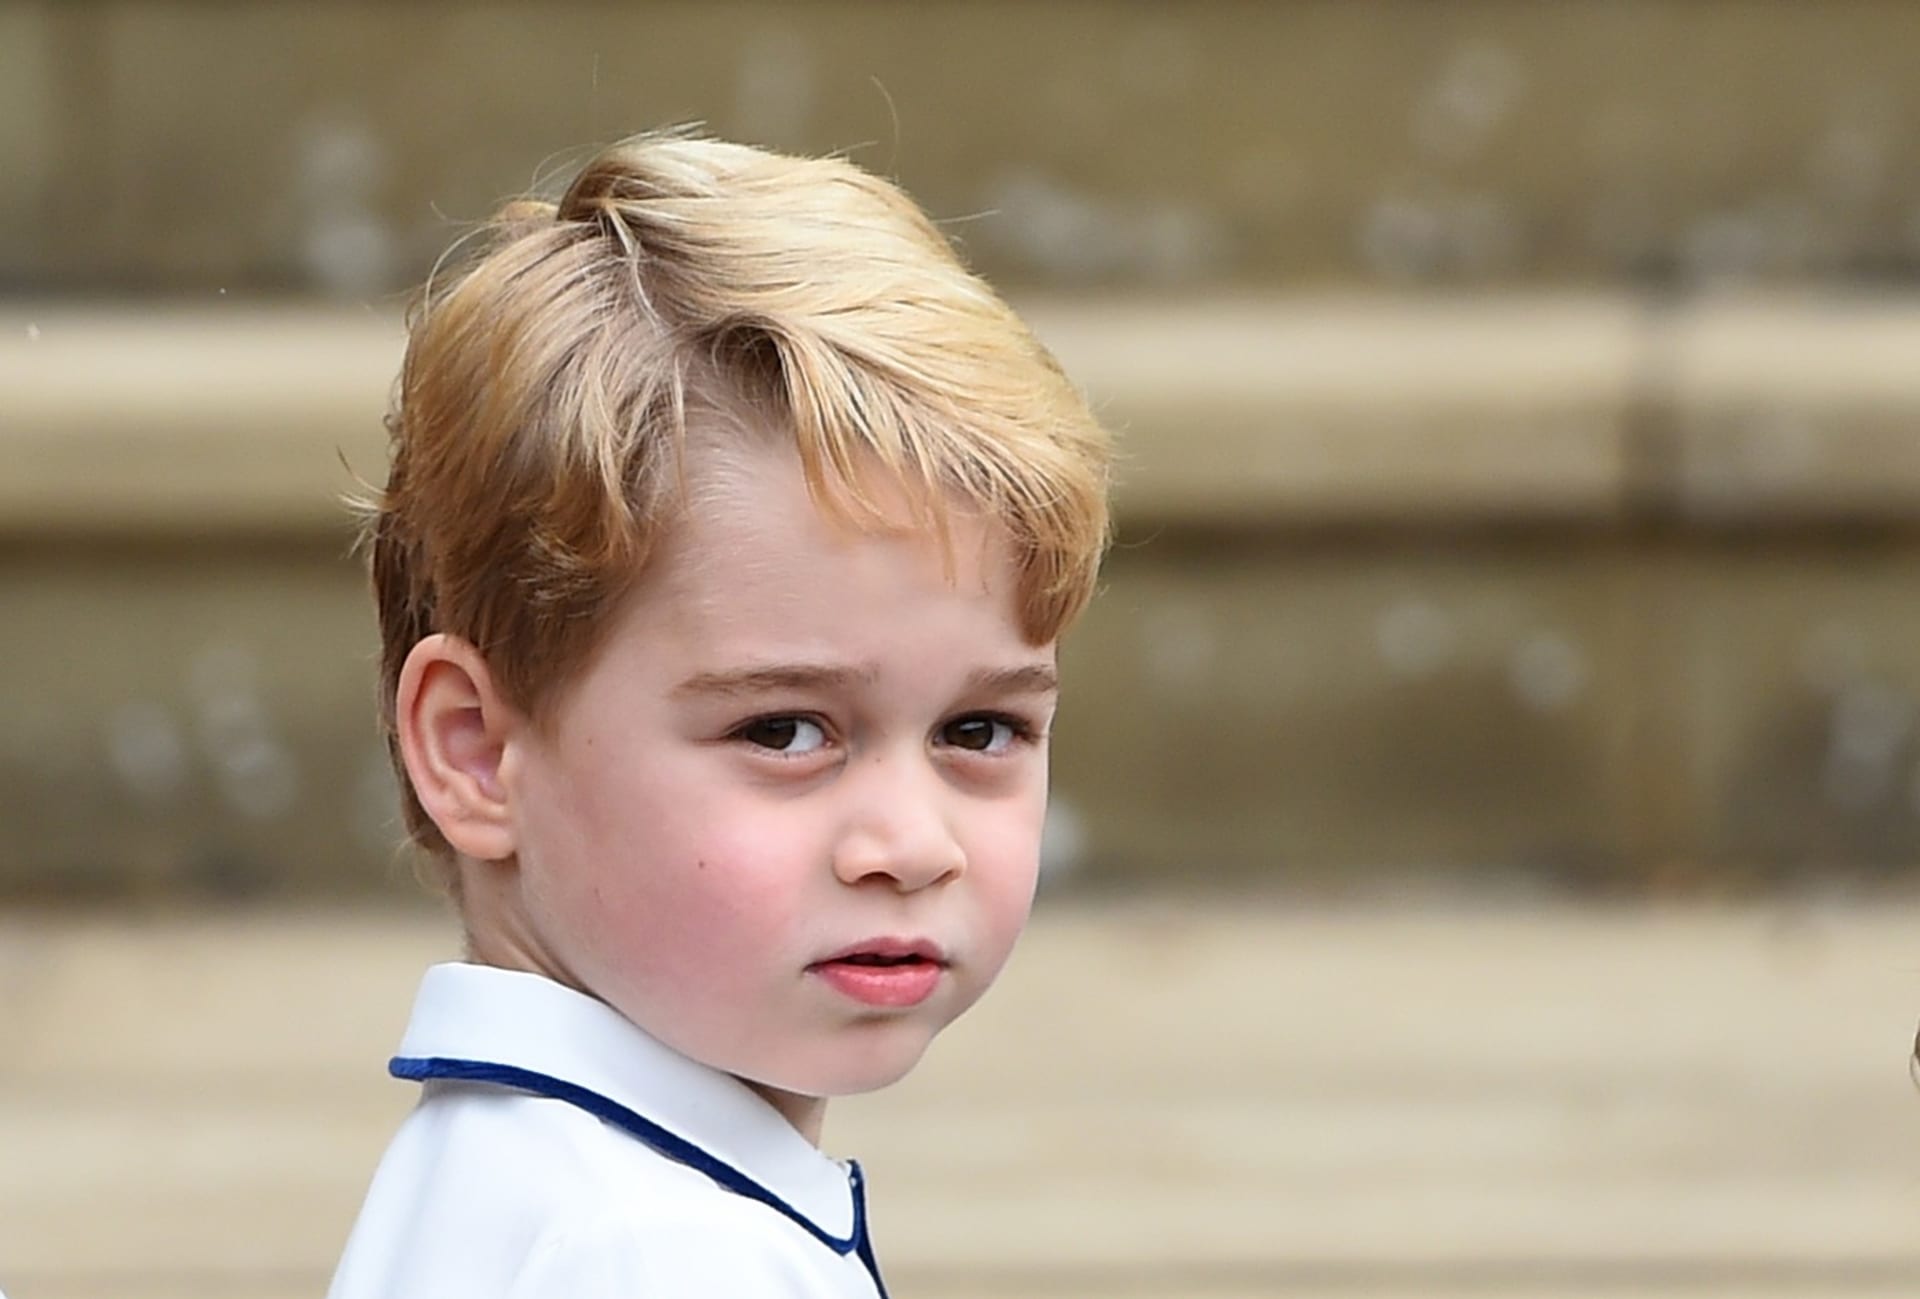 Tvůrci i veřejnost nejstaršího syna prince Williama za gaye označili už v minulosti.